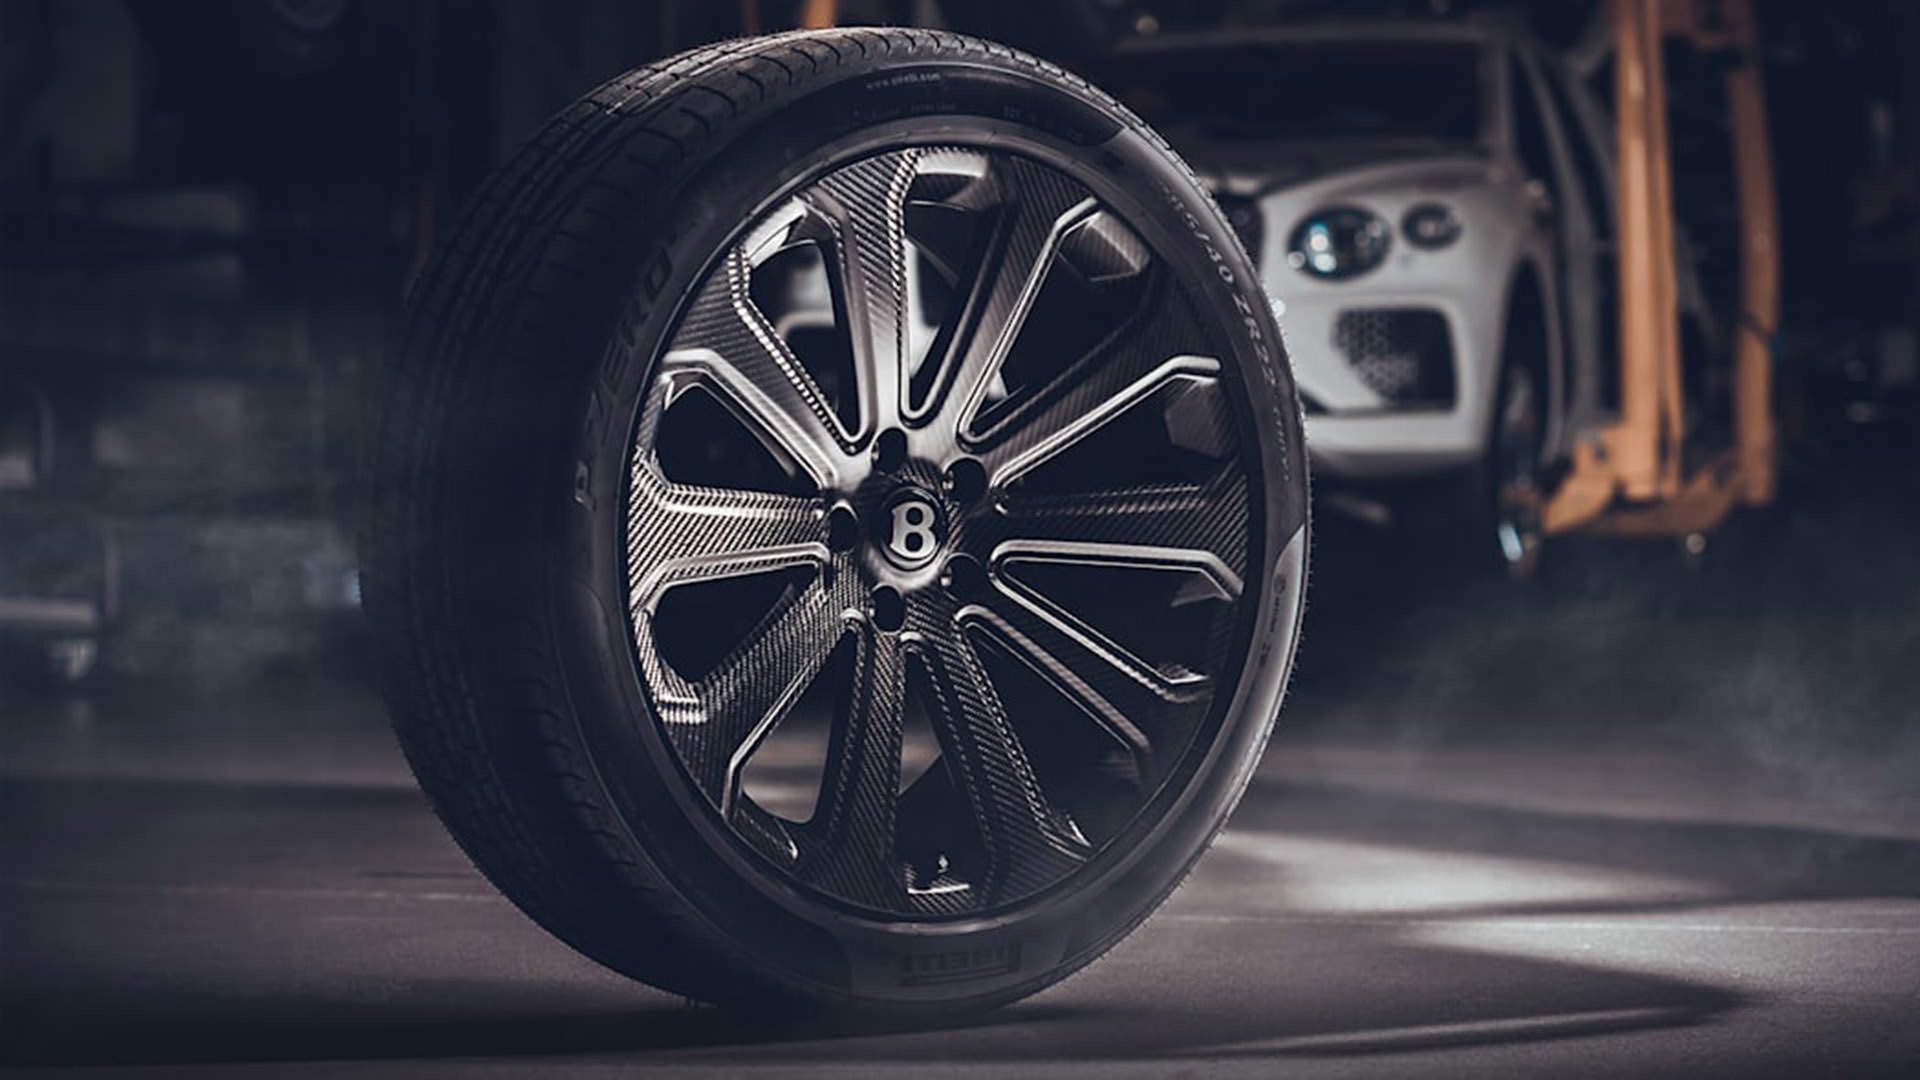 نمای سه چهارم رینگ فیبر کربنی / Carbon fiber wheel بنتلی بنتایگا / Bentley Bentayga